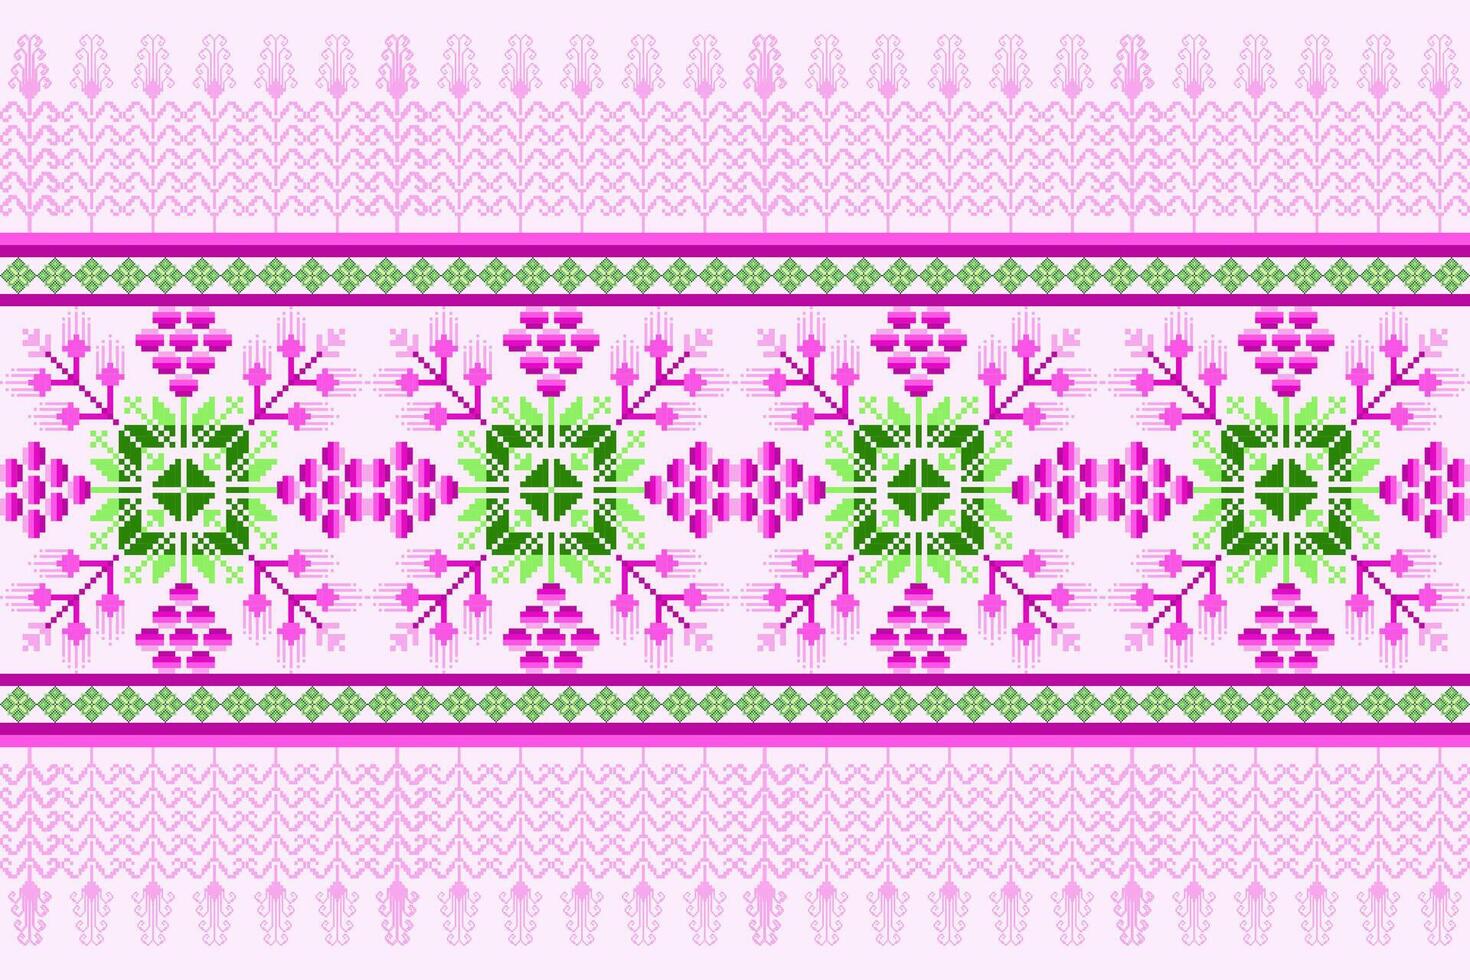 Blumen- Kreuz Stich Stickerei hintergrund.geometrisch ethnisch orientalisch nahtlos Muster traditionell.aztekisch Stil abstrakt vektor.design zum textur, stoff, kleidung, verpackung, dekoration, teppich. vektor